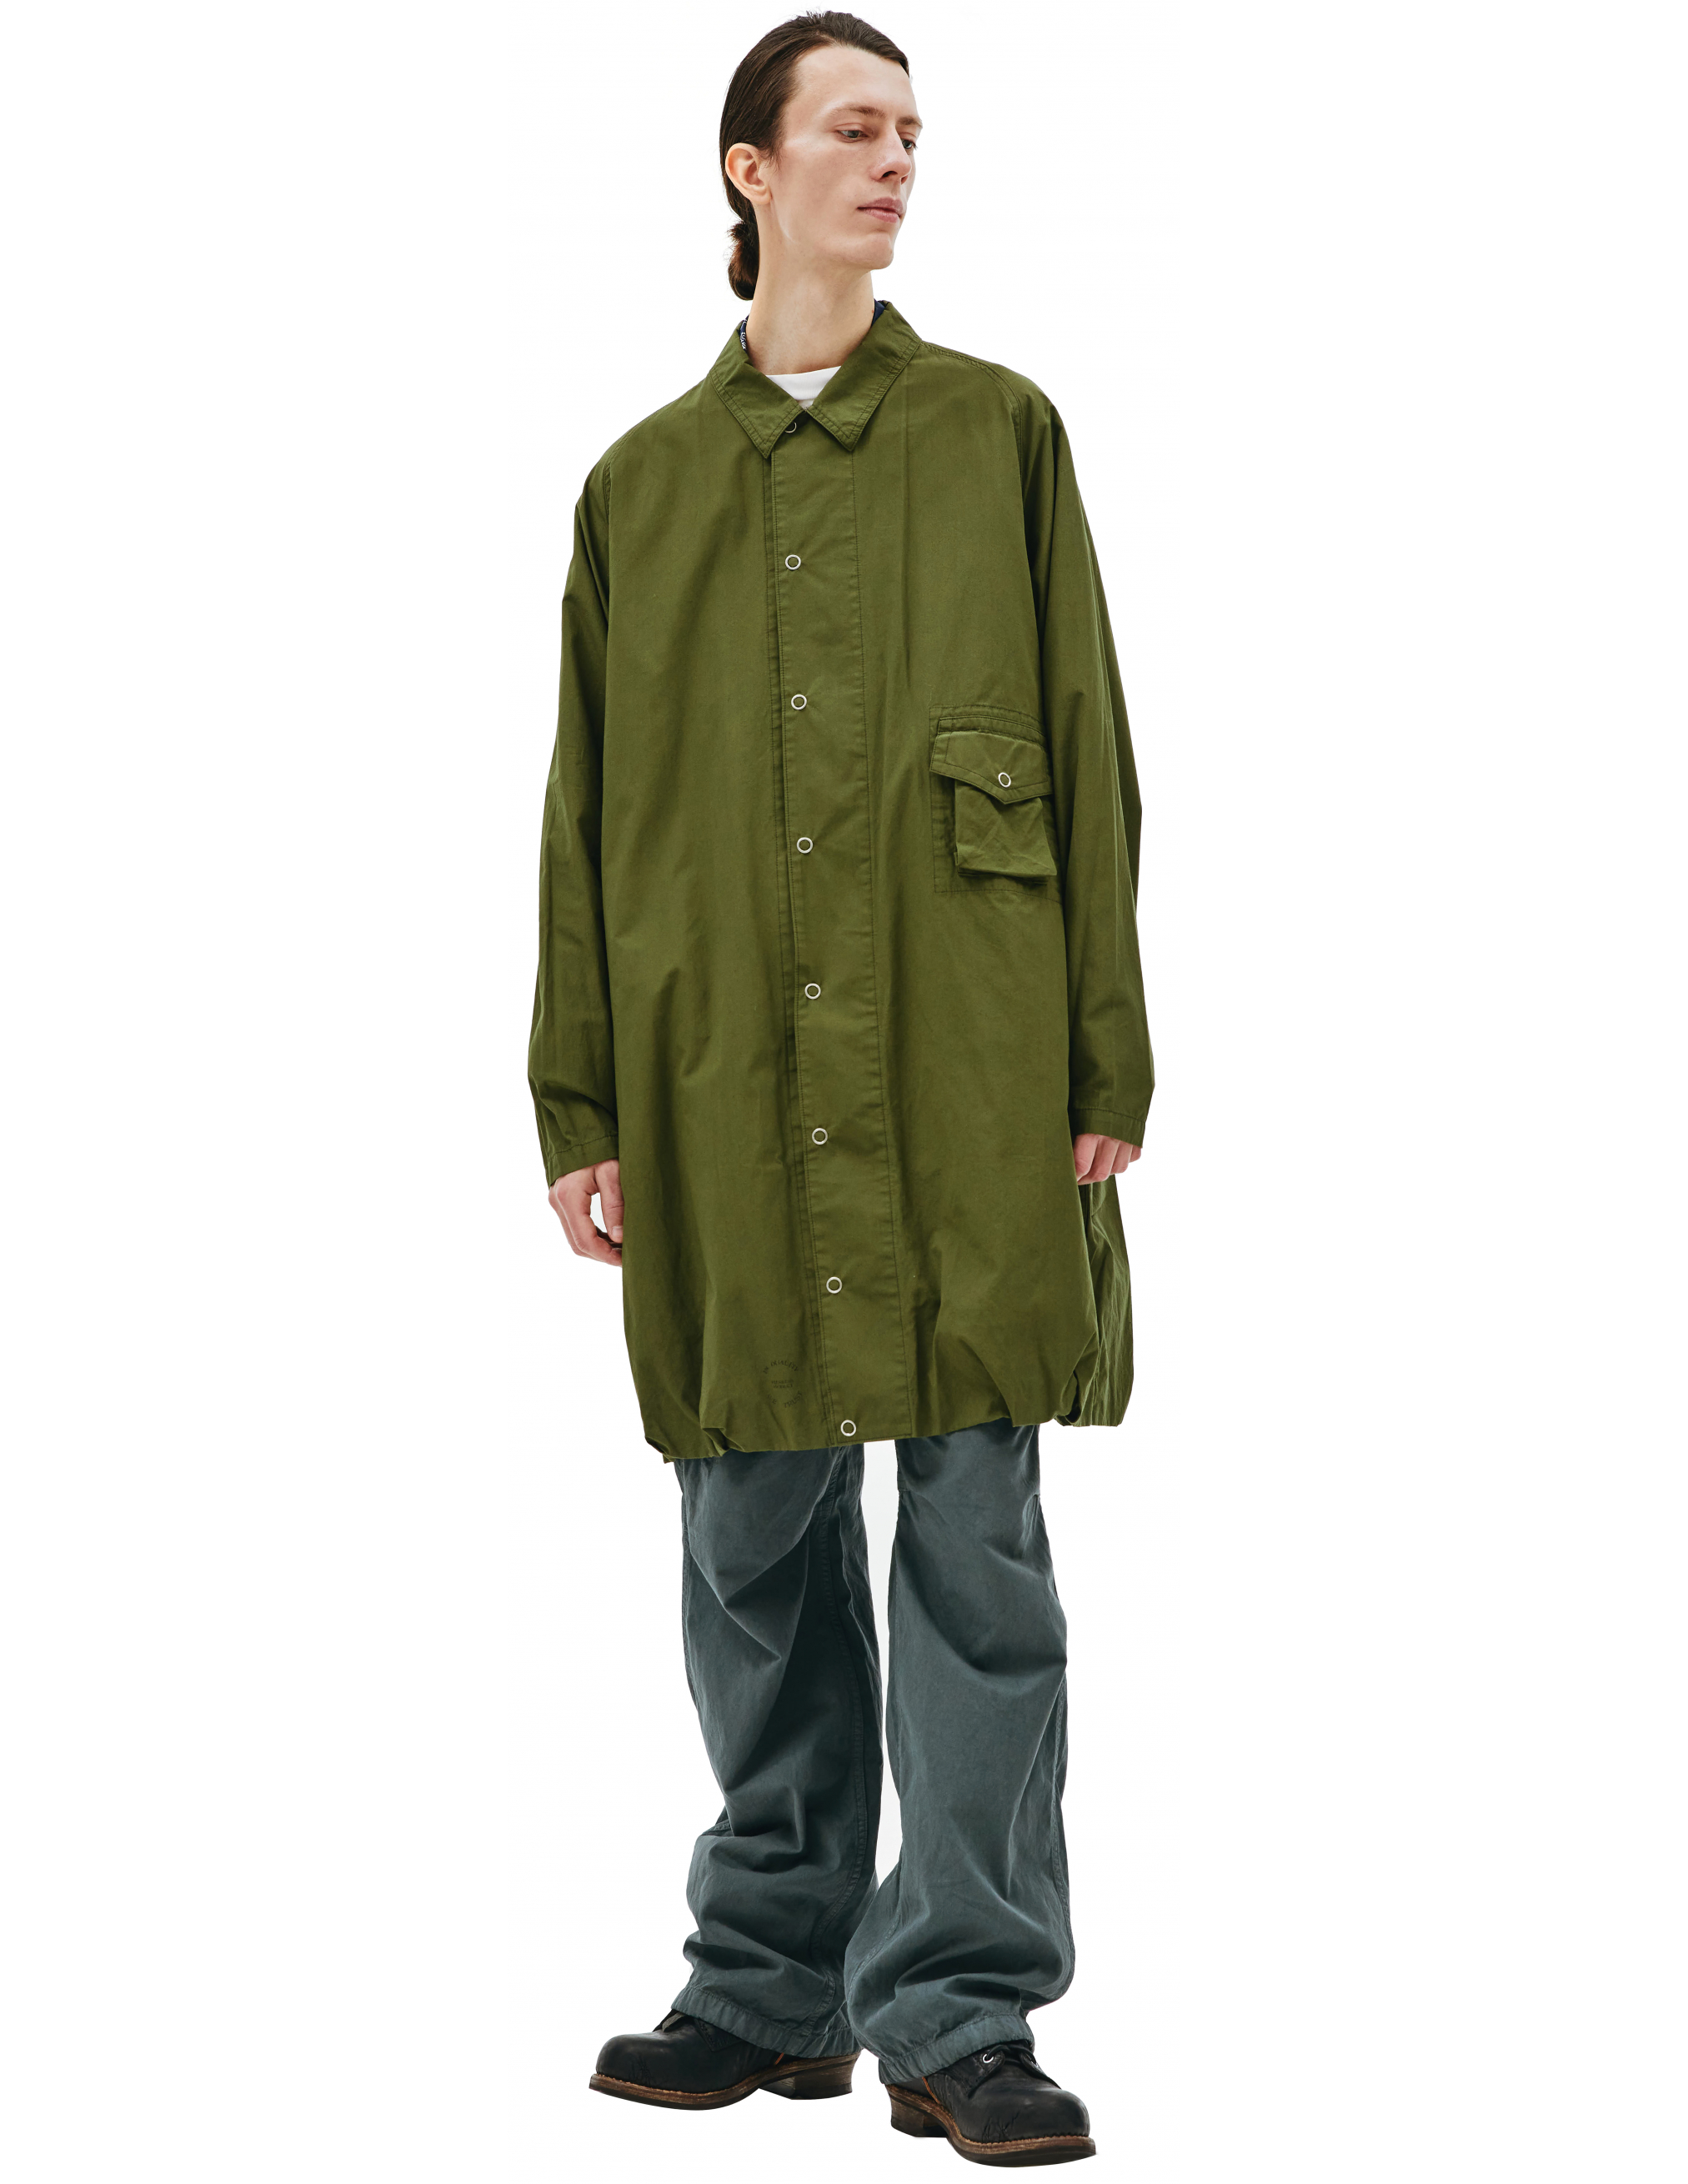 Пальто из хлопка с накладным карманом - Visvim 0121205013027/olive